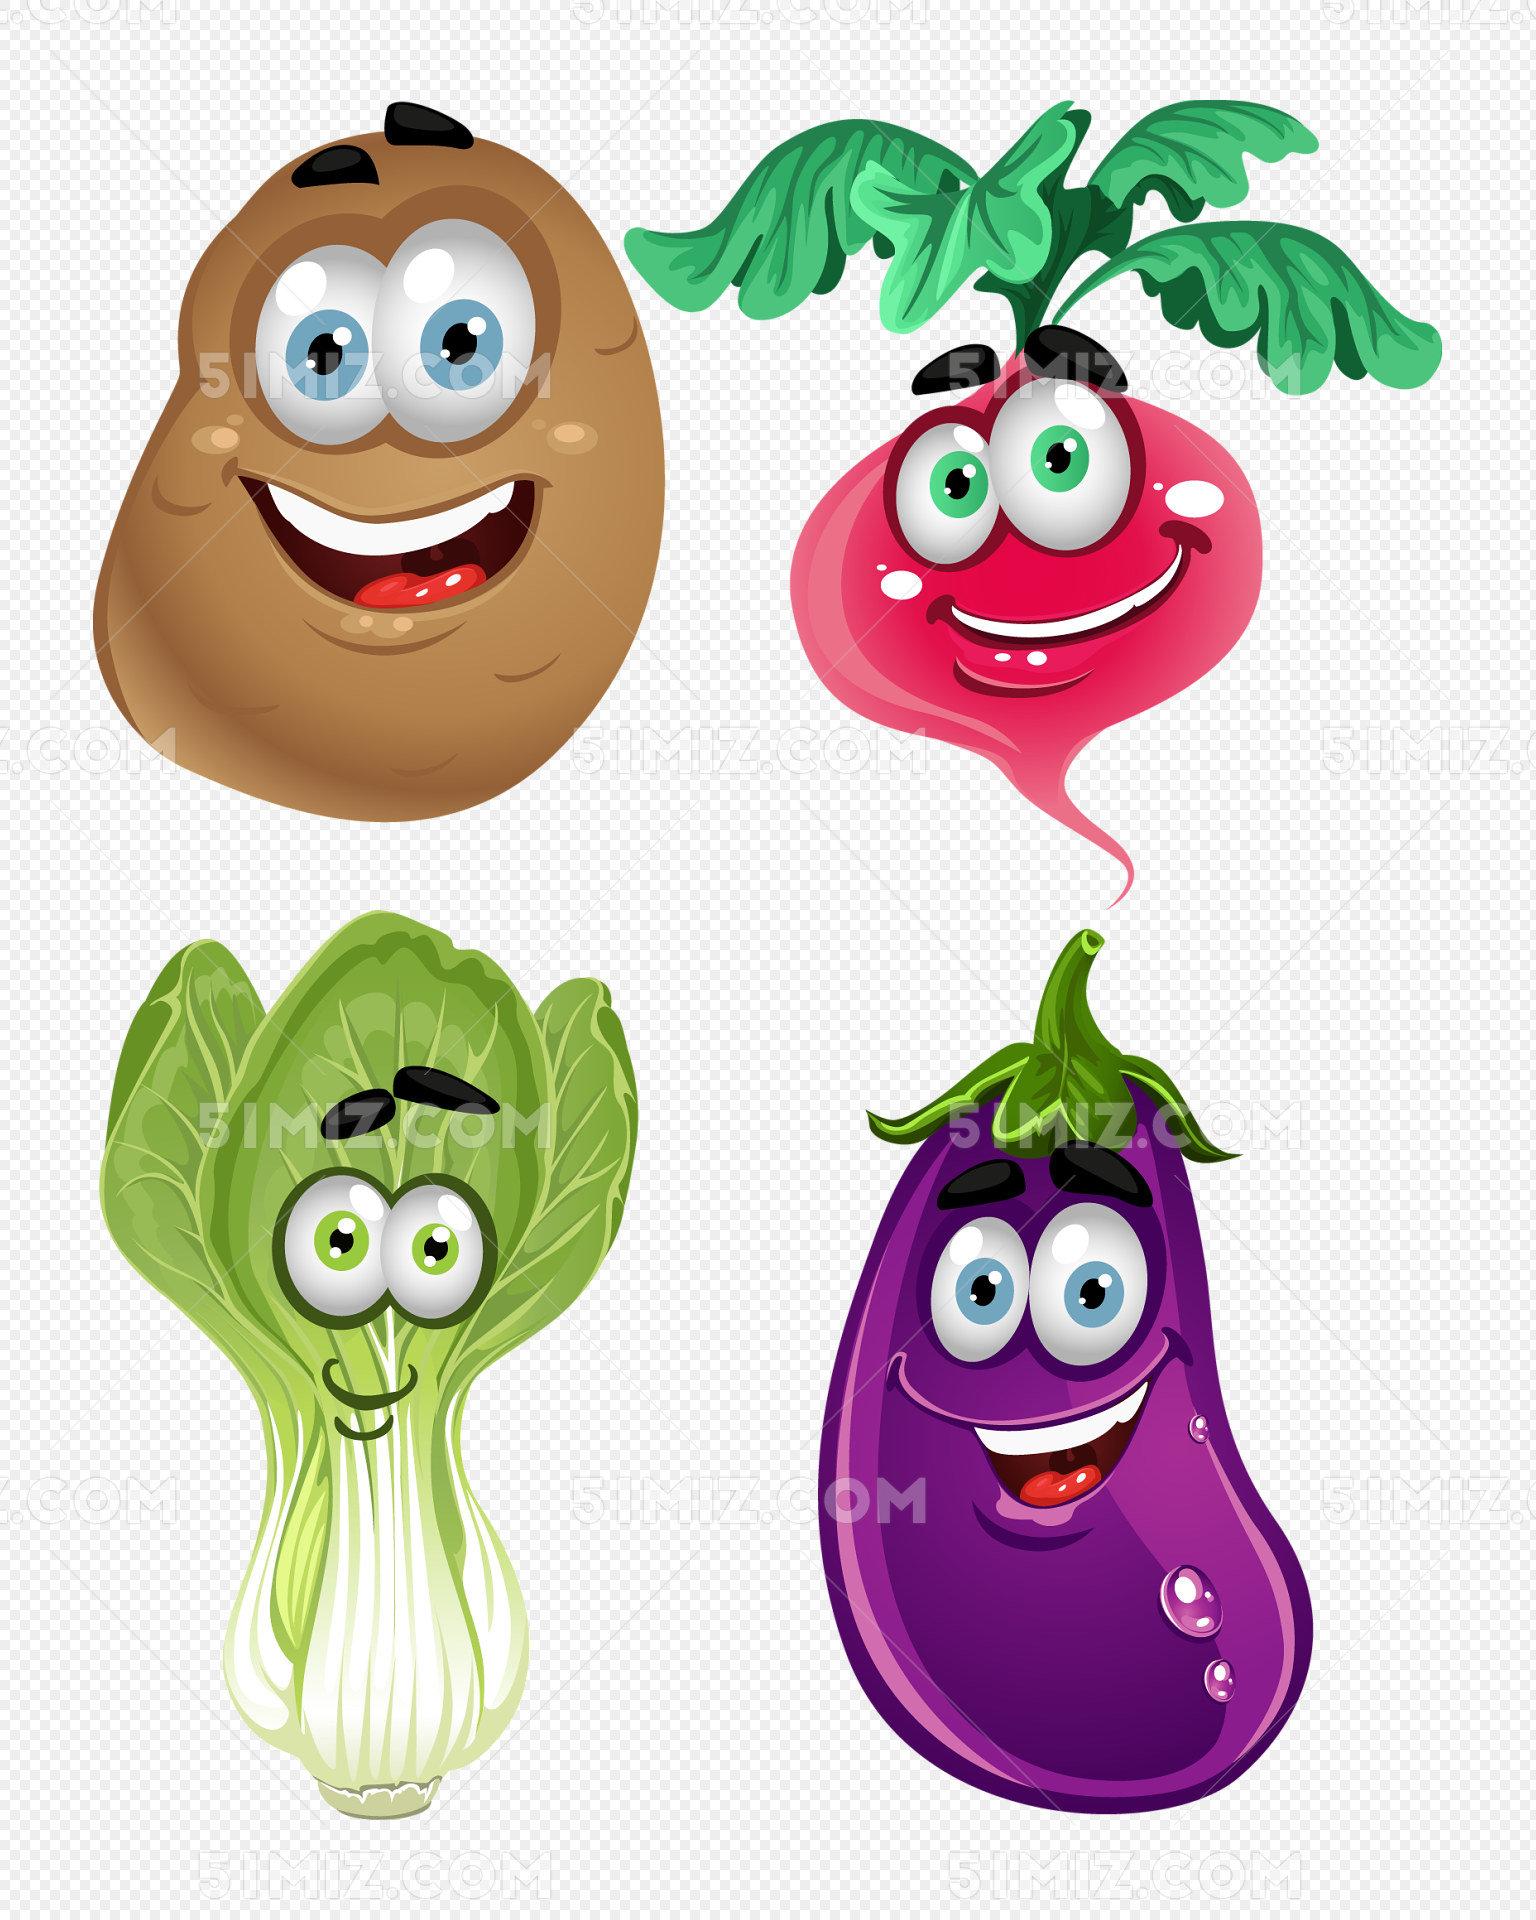 各种可样的卡通蔬菜图片素材免费下载 - 觅知网